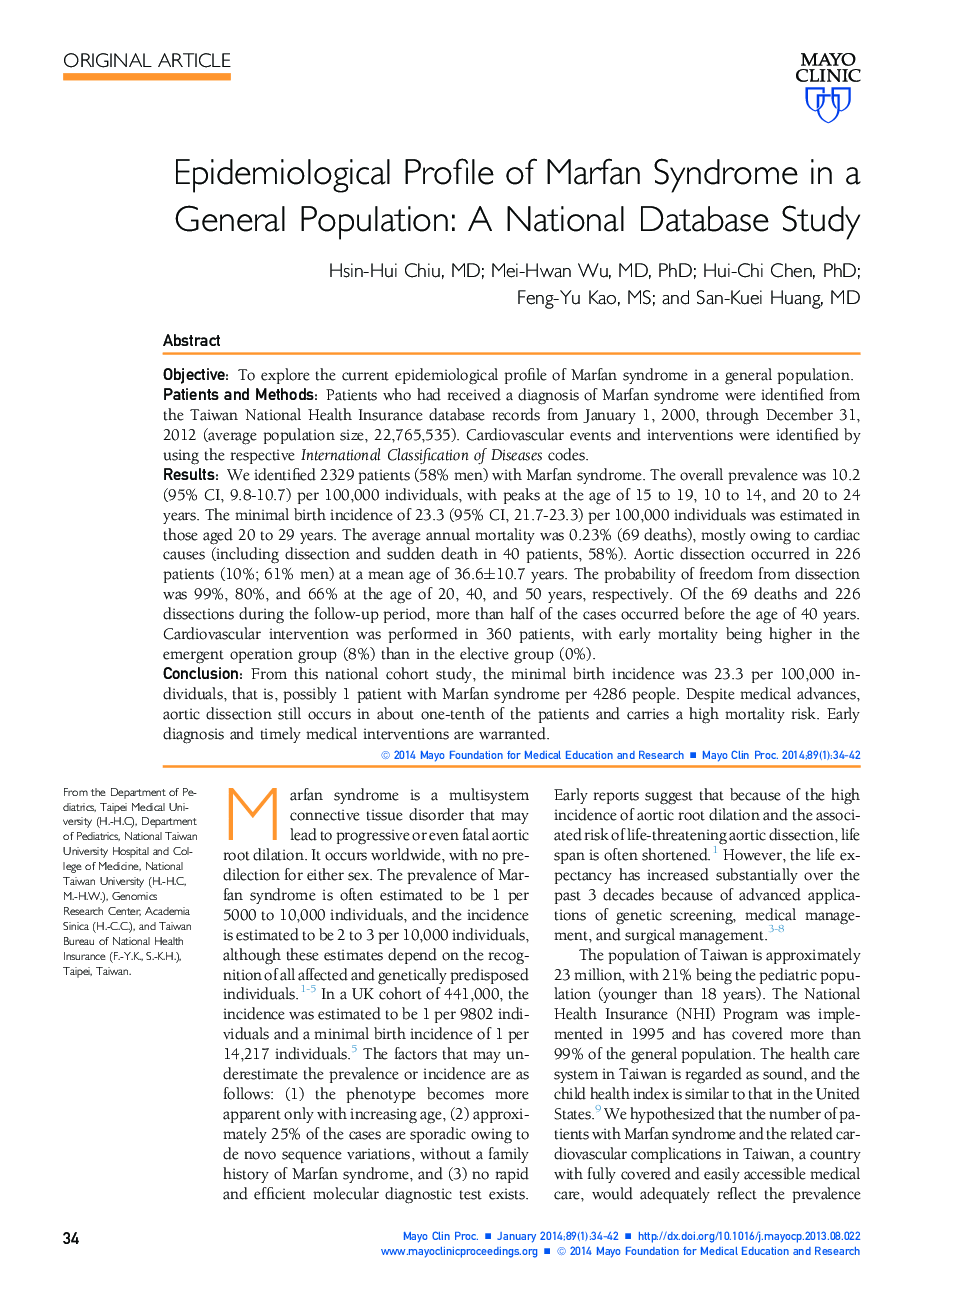 مشخصات اپیدمیولوژیک سندرم مارفان در یک جمعیت عمومی: مطالعه پایگاه داده ملی 